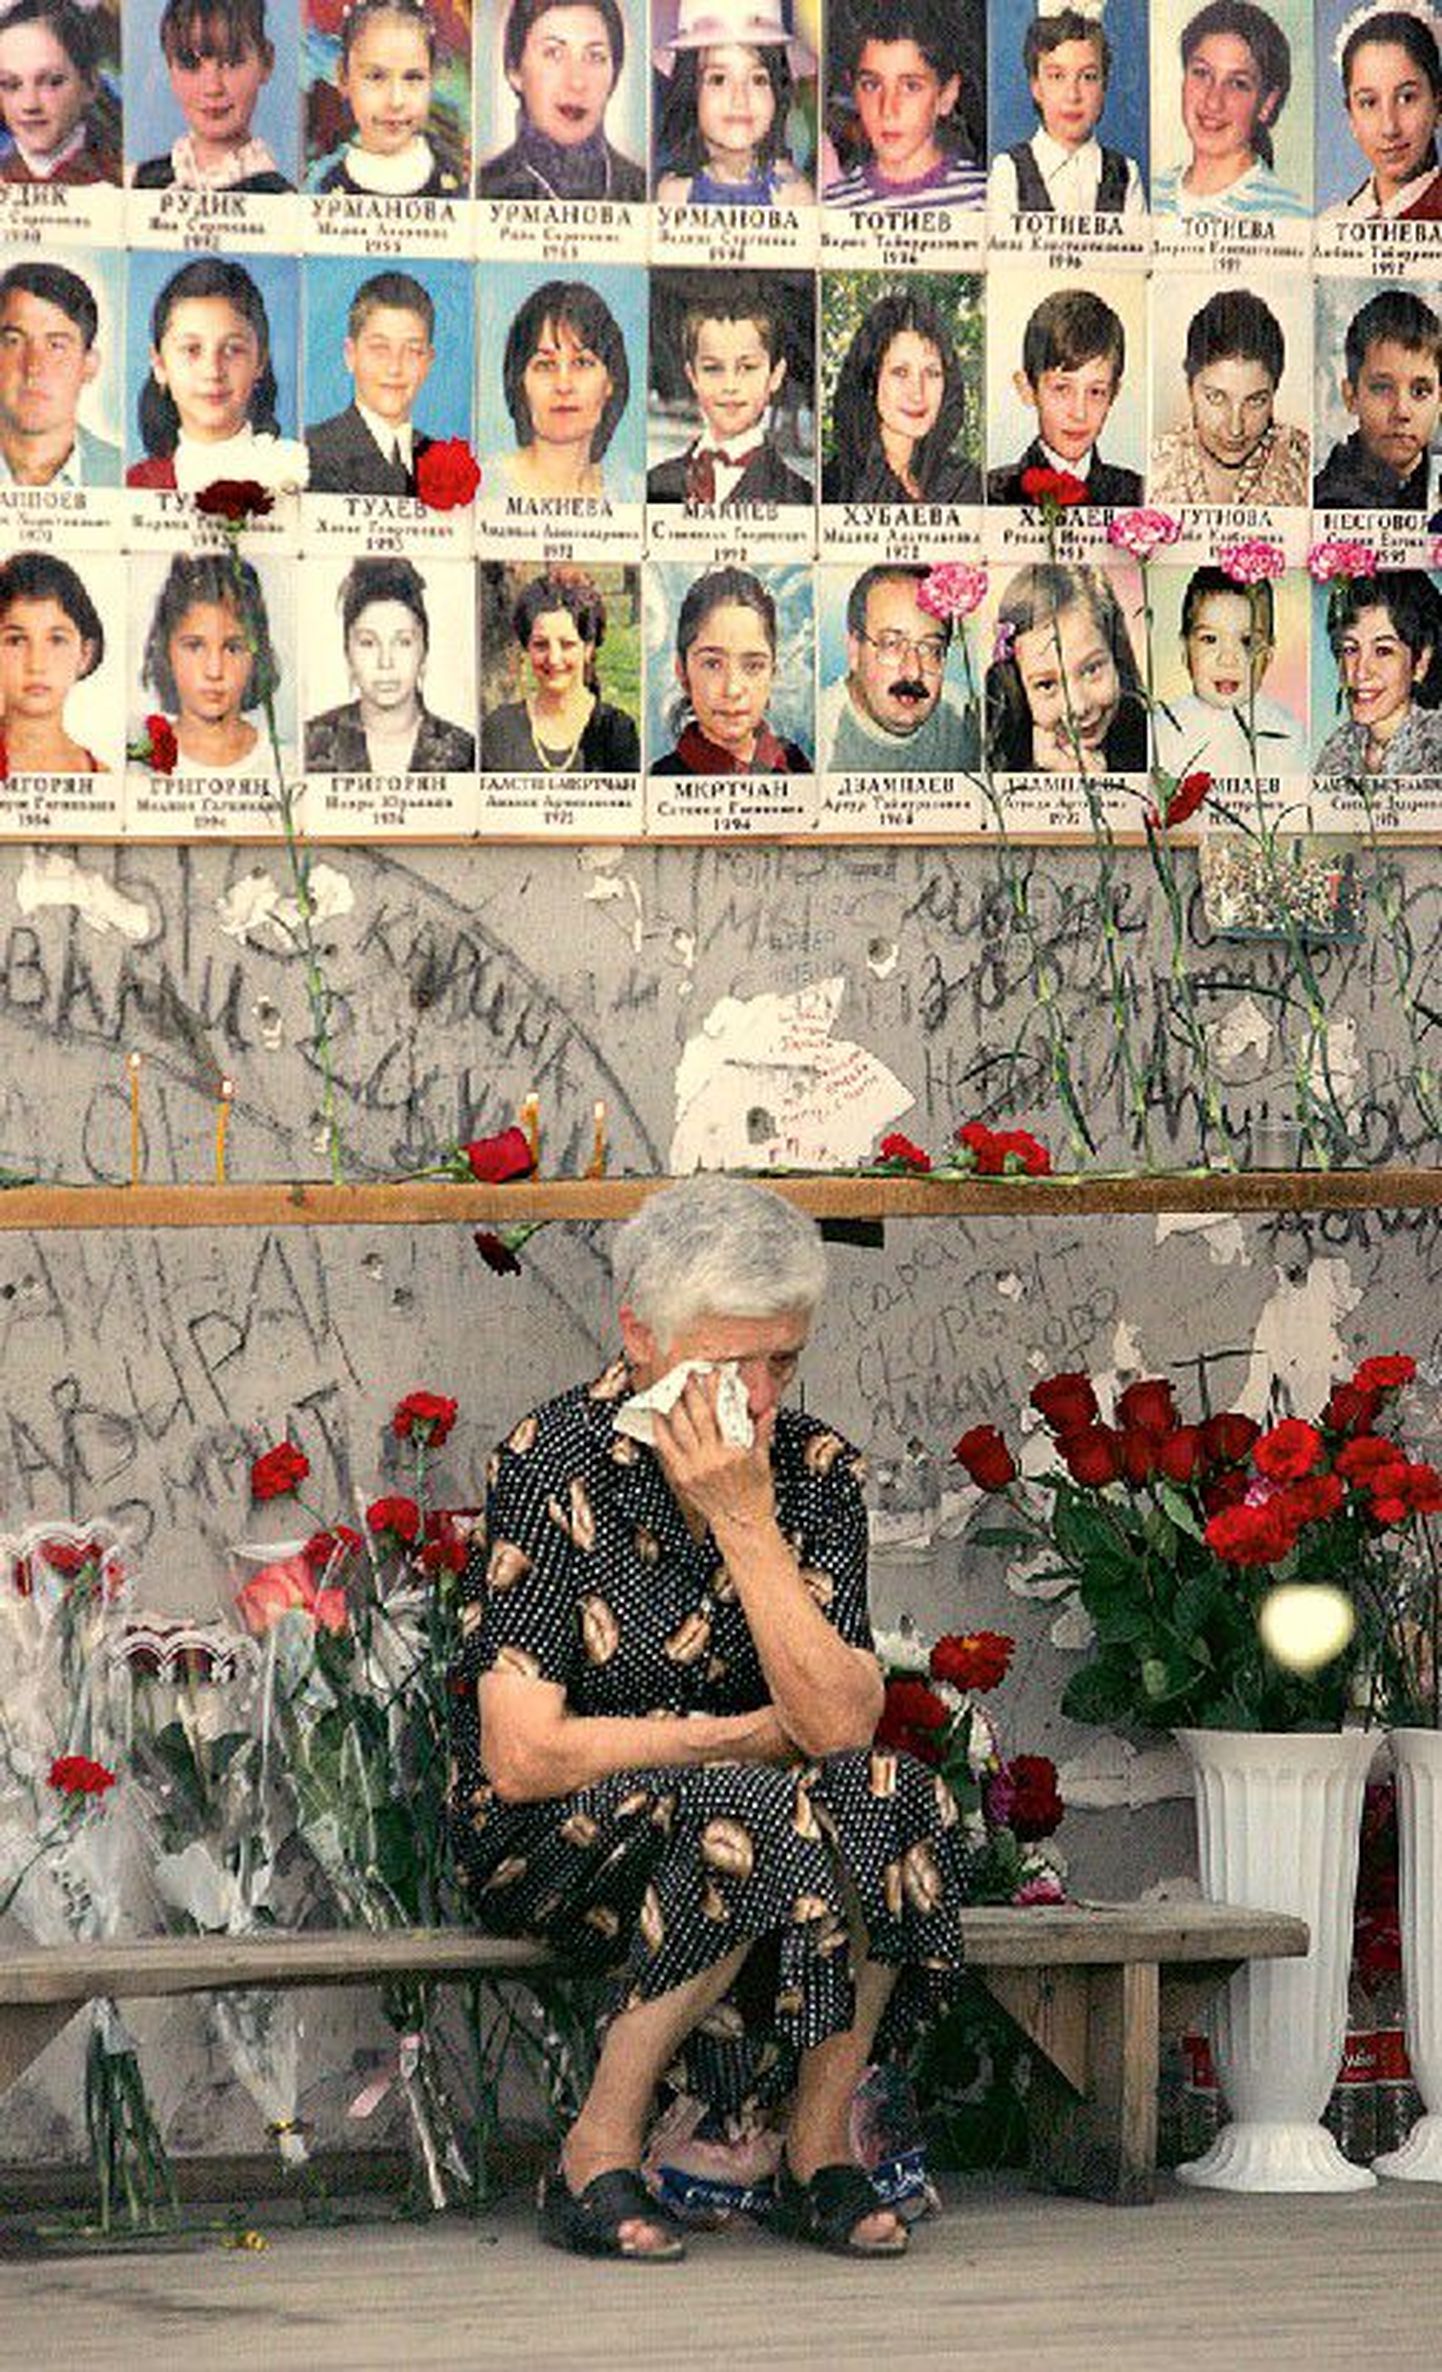 Пожилая женщина горько плачет на развалинах бесланской школы, вспоминая жертв трагических событий.